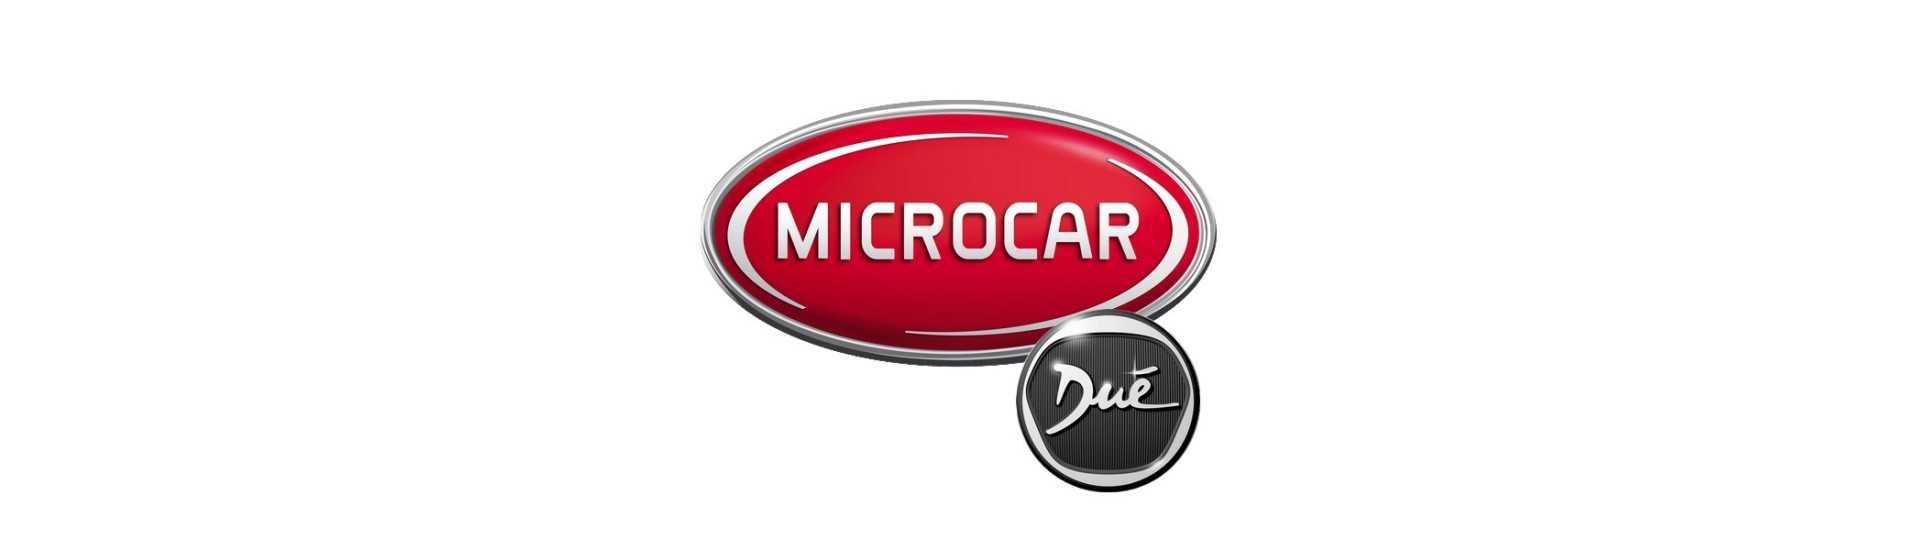 Bästa priset på handskraftslåda för bil utan körkort Microcar Dué